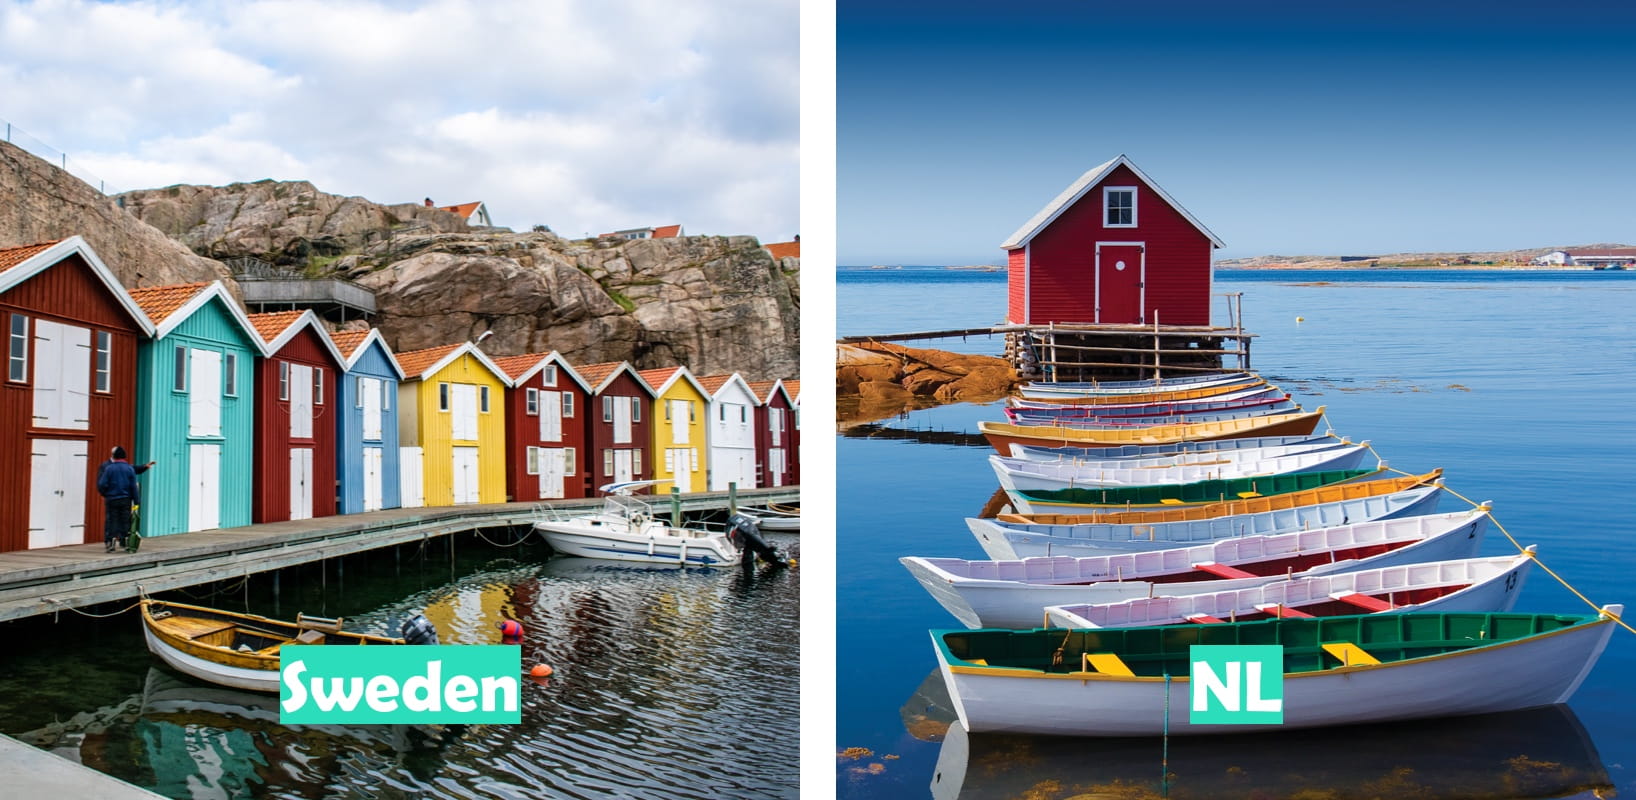 Sweden (West Sweden pictured) vs Newfoundland & Labrador (Joe Batt’s Arm, Fogo Island pictured)